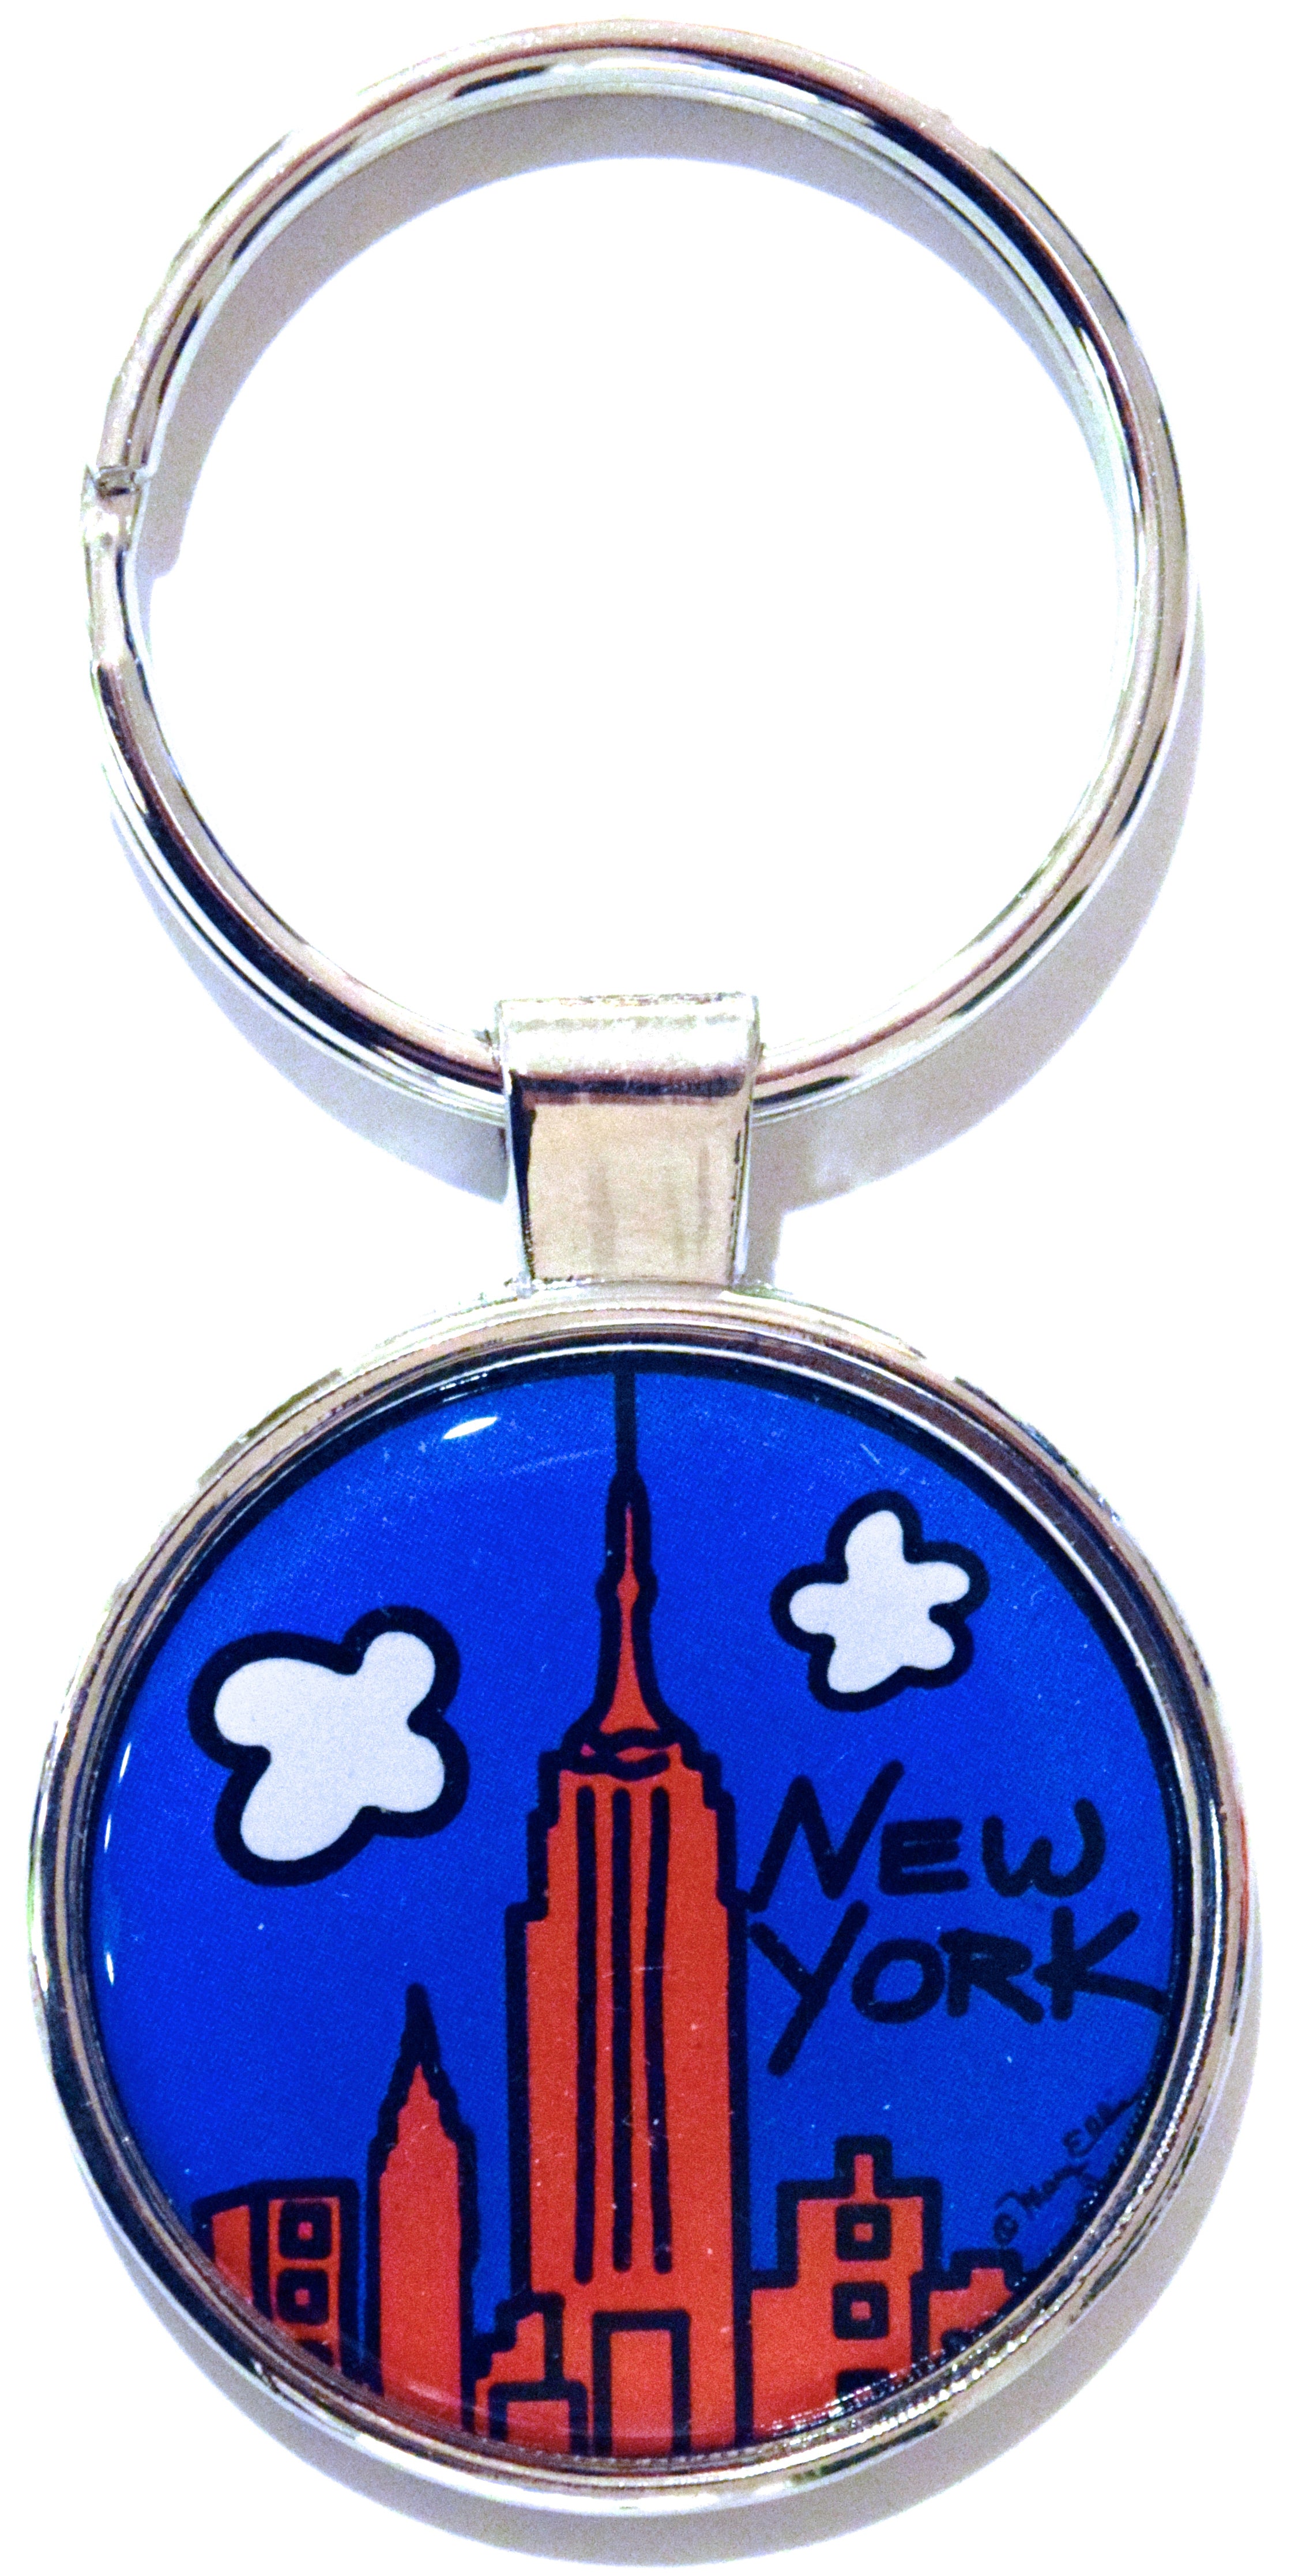 MaryEllisNewYork New York Keychain Metal New York Big Apple Souvenir Gift Key Ring Steel Backing Art by Mary Ellis